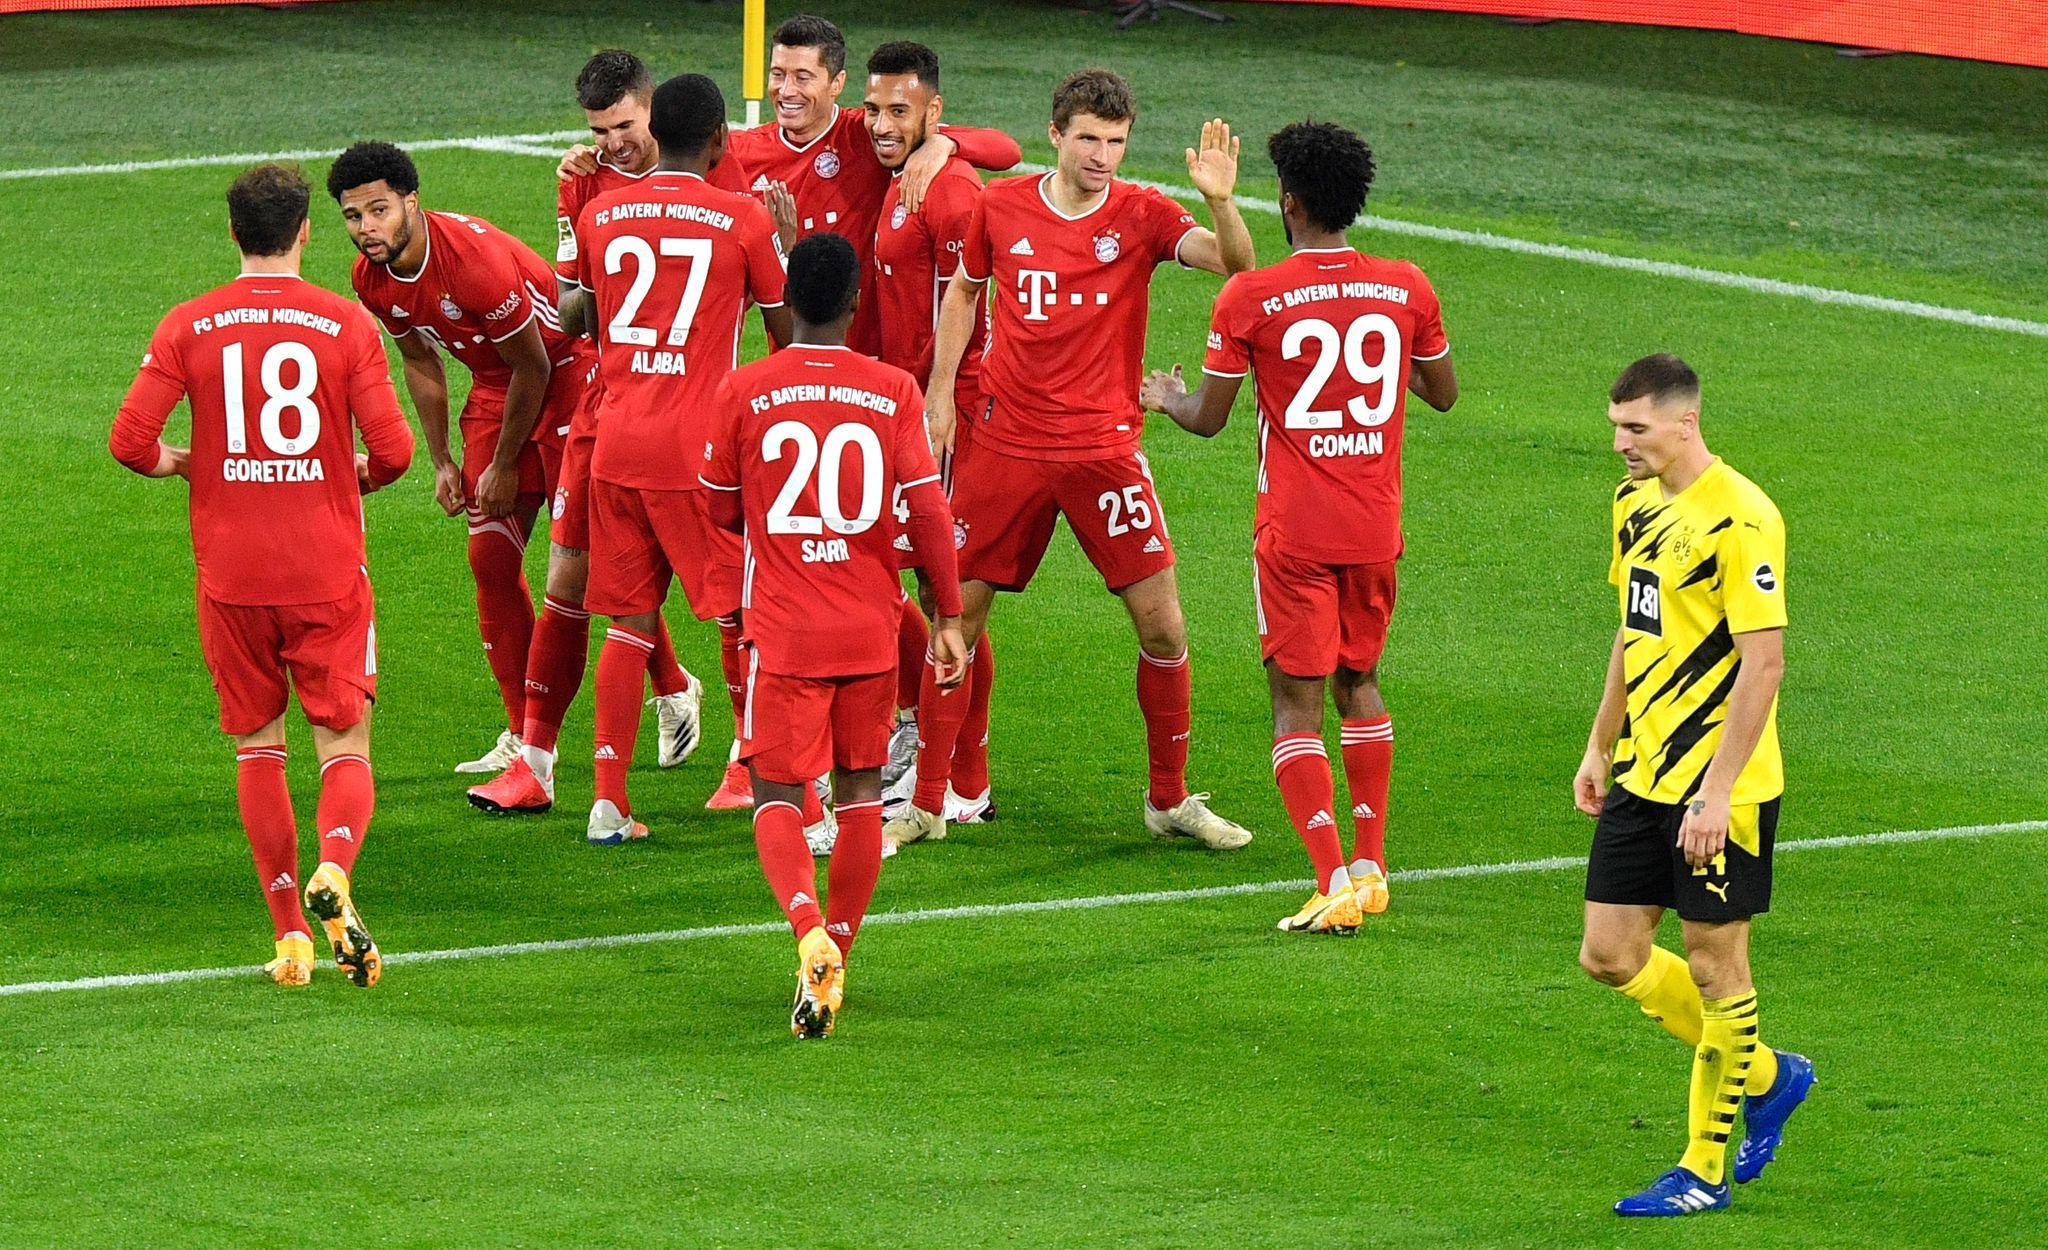 Bundesliga - Borussia Dortmund v Bayern Munich